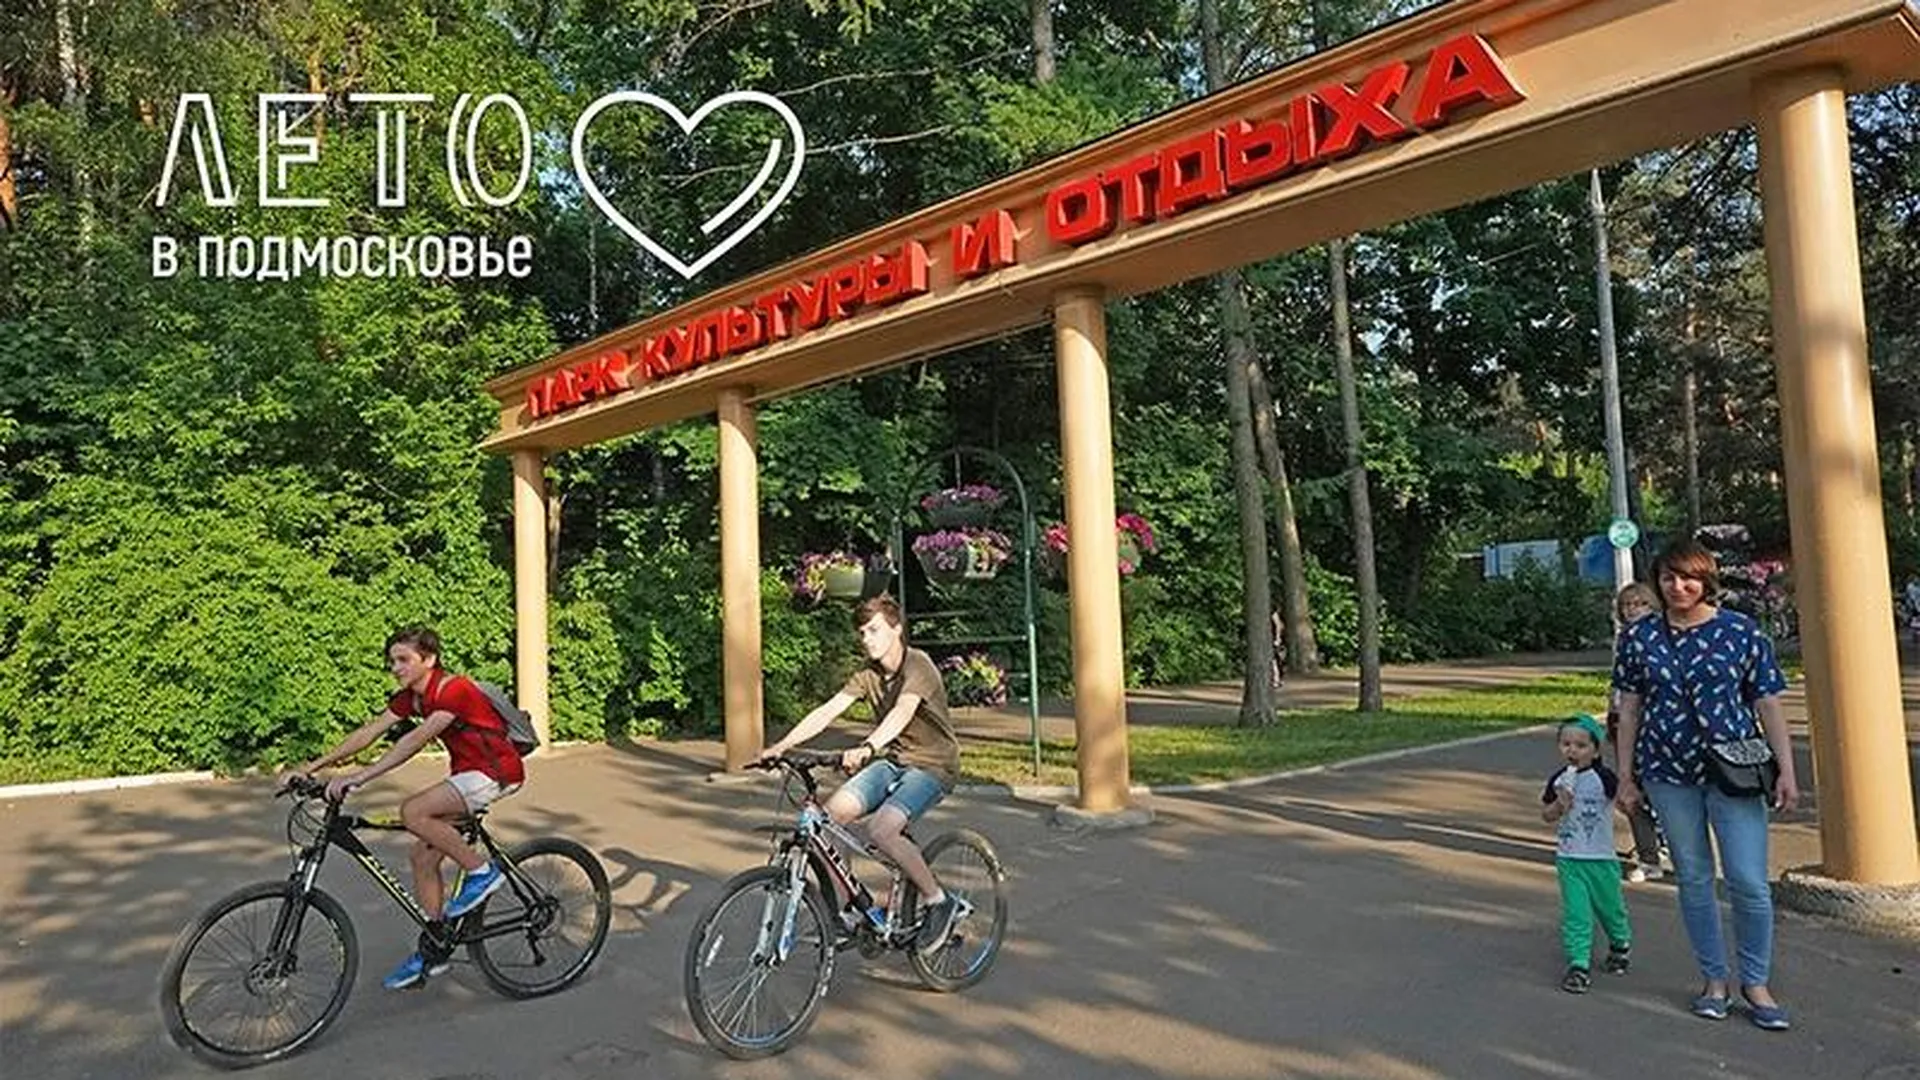 Шахматы, кино и НЛО: пять причин посетить парк в Жуковском